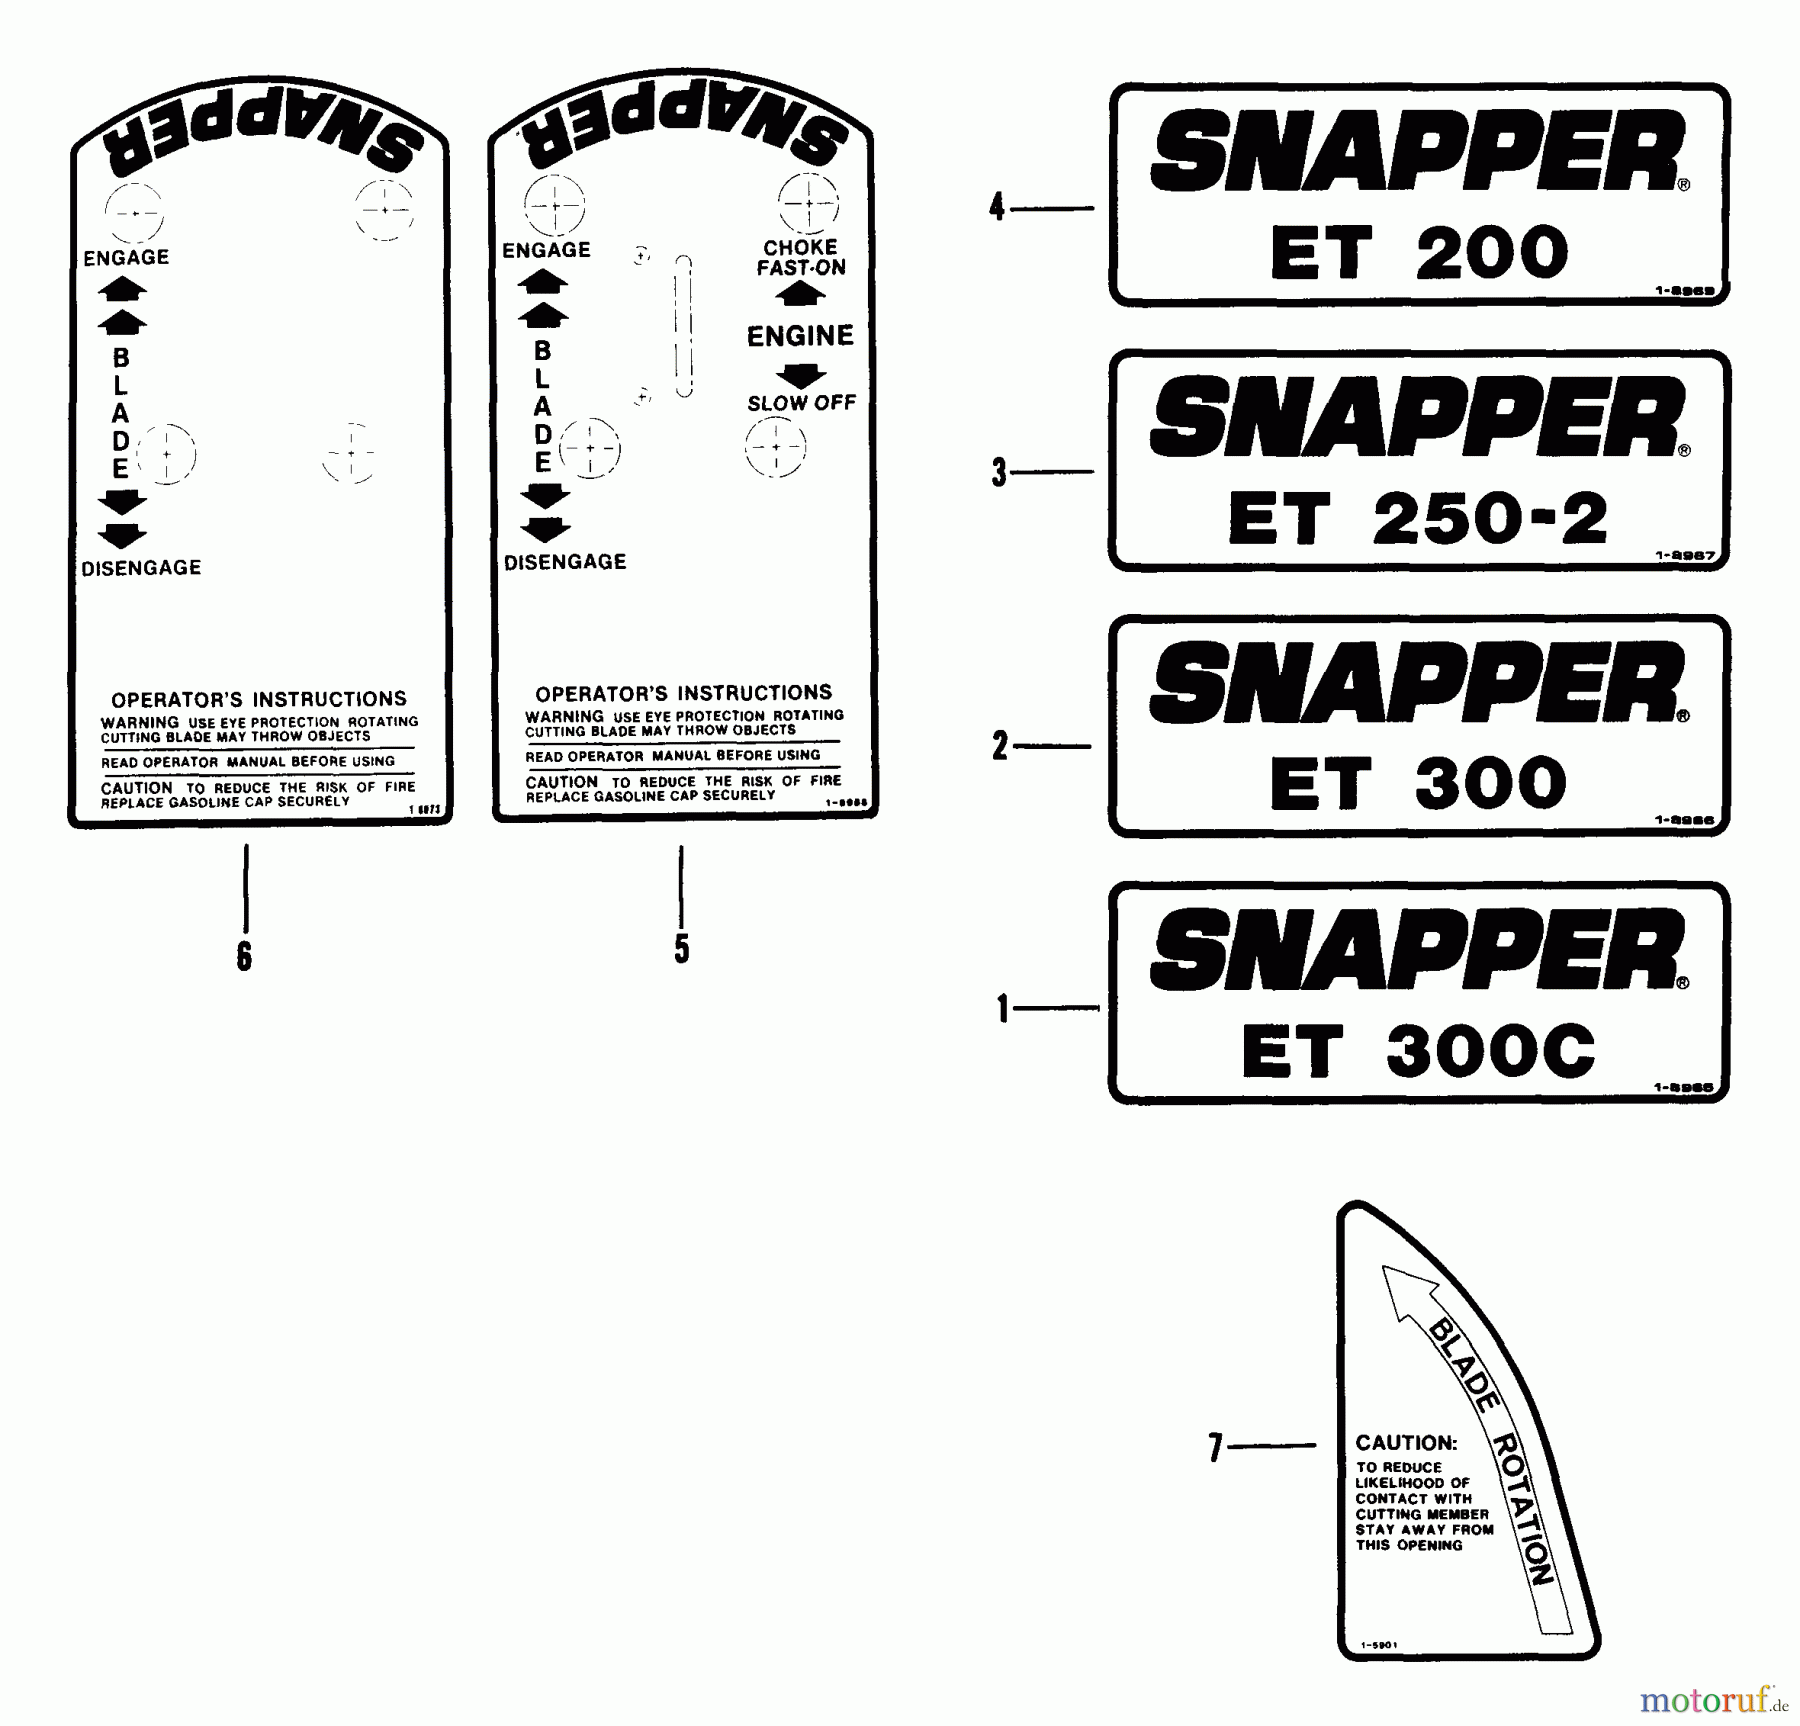  Snapper Kantenschneider ET300 - Snapper Edger Trimmer, 3 HP, Series 0 Decals